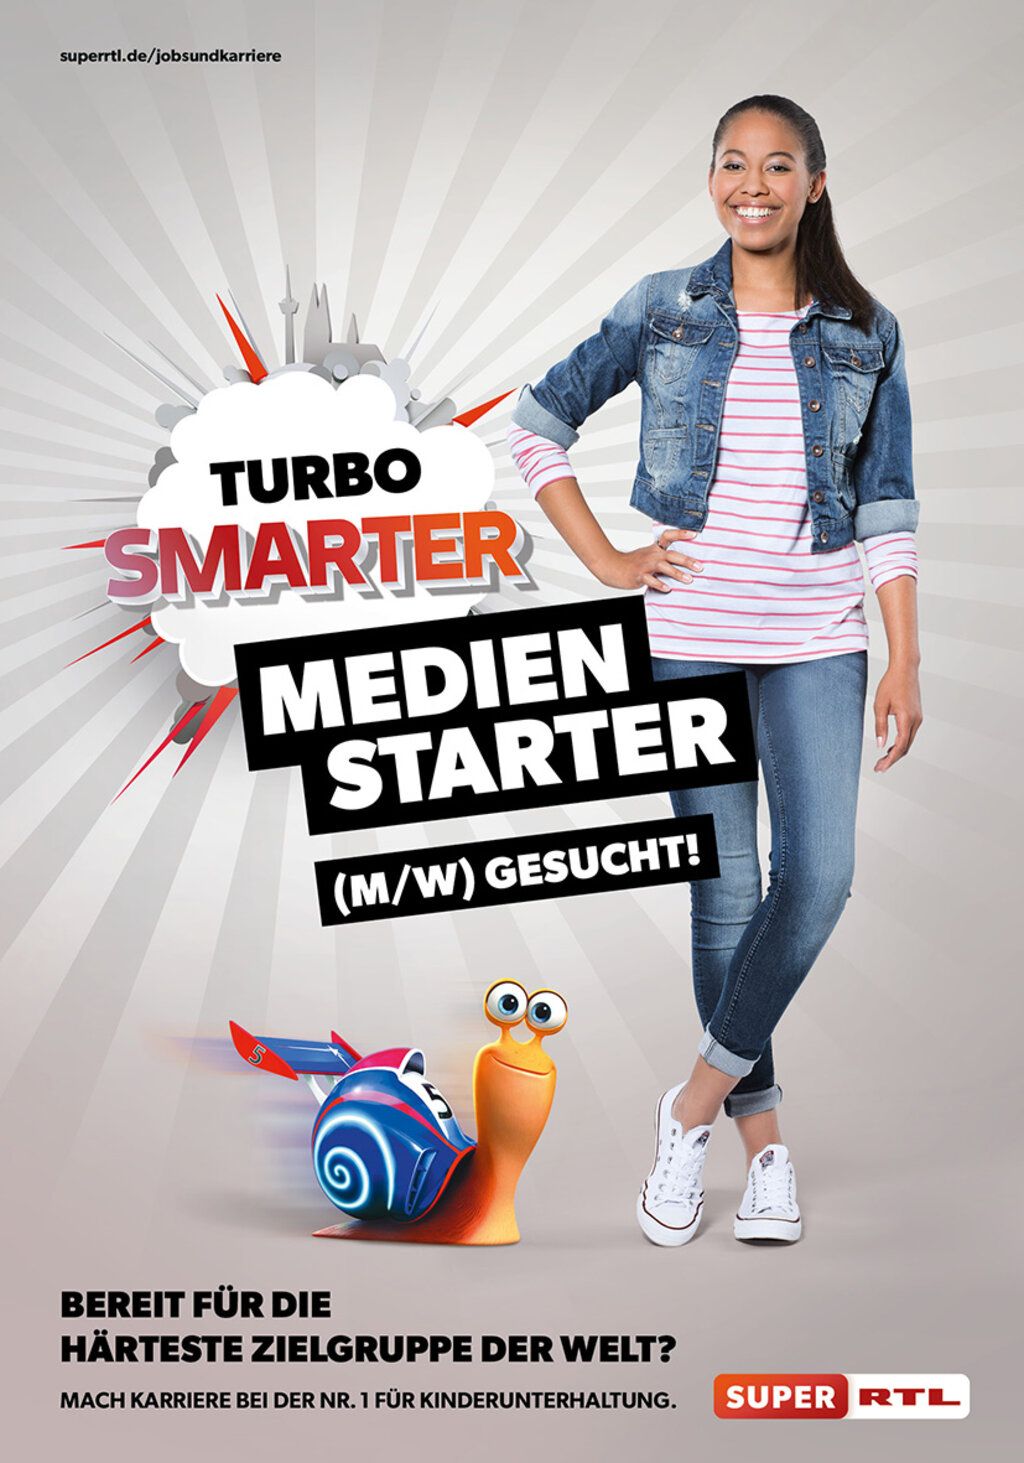 Junge Frau mit Jeansjacke wirbt für einen Job bei Super RTL. Text: Turbo-smarter Medien-Starter.